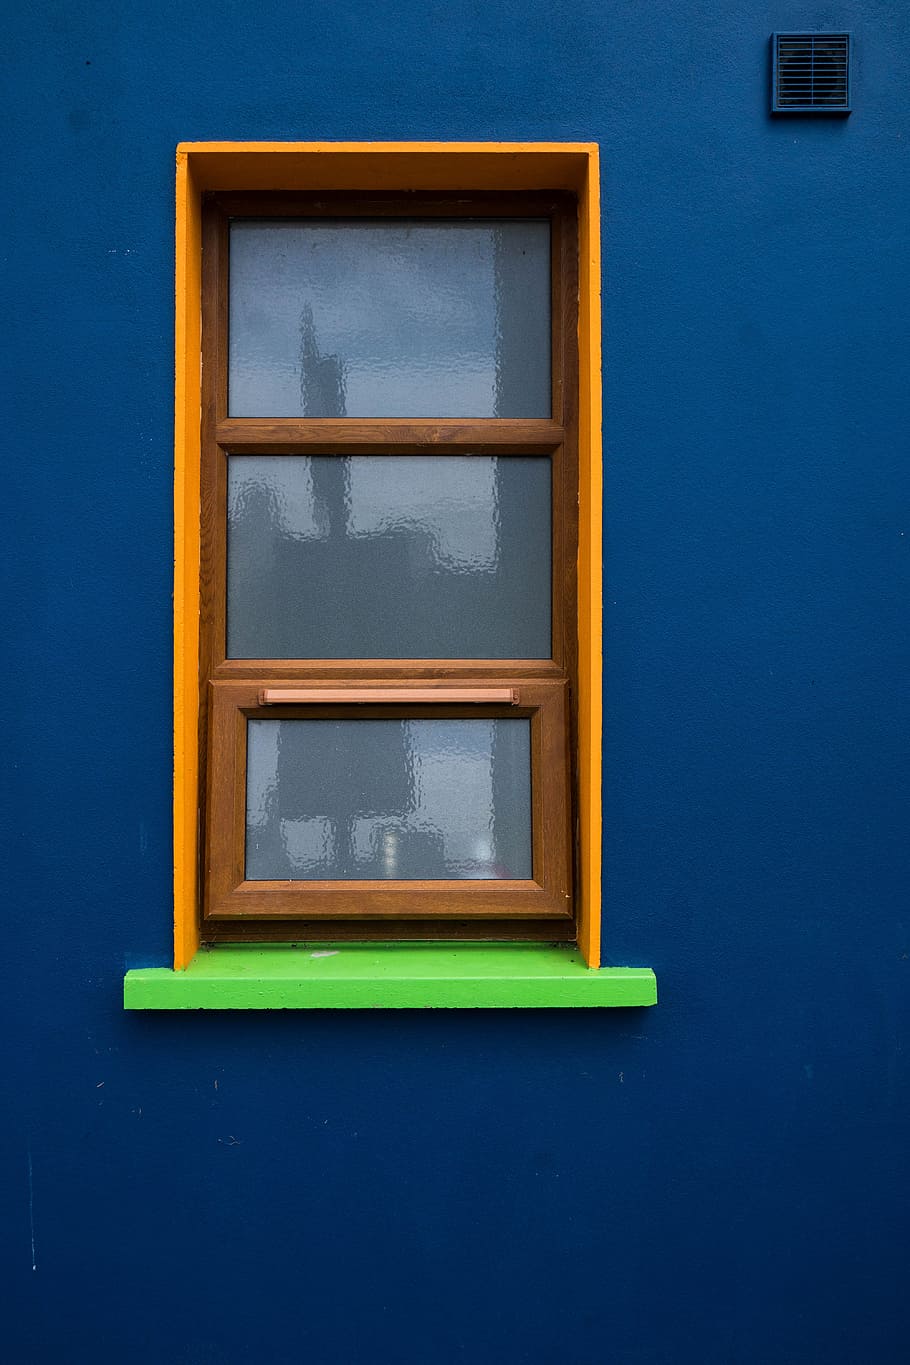 ventana, vidrio, arquitectura, edificio, disco, azul, pared, reflexión, reflejo, inicio